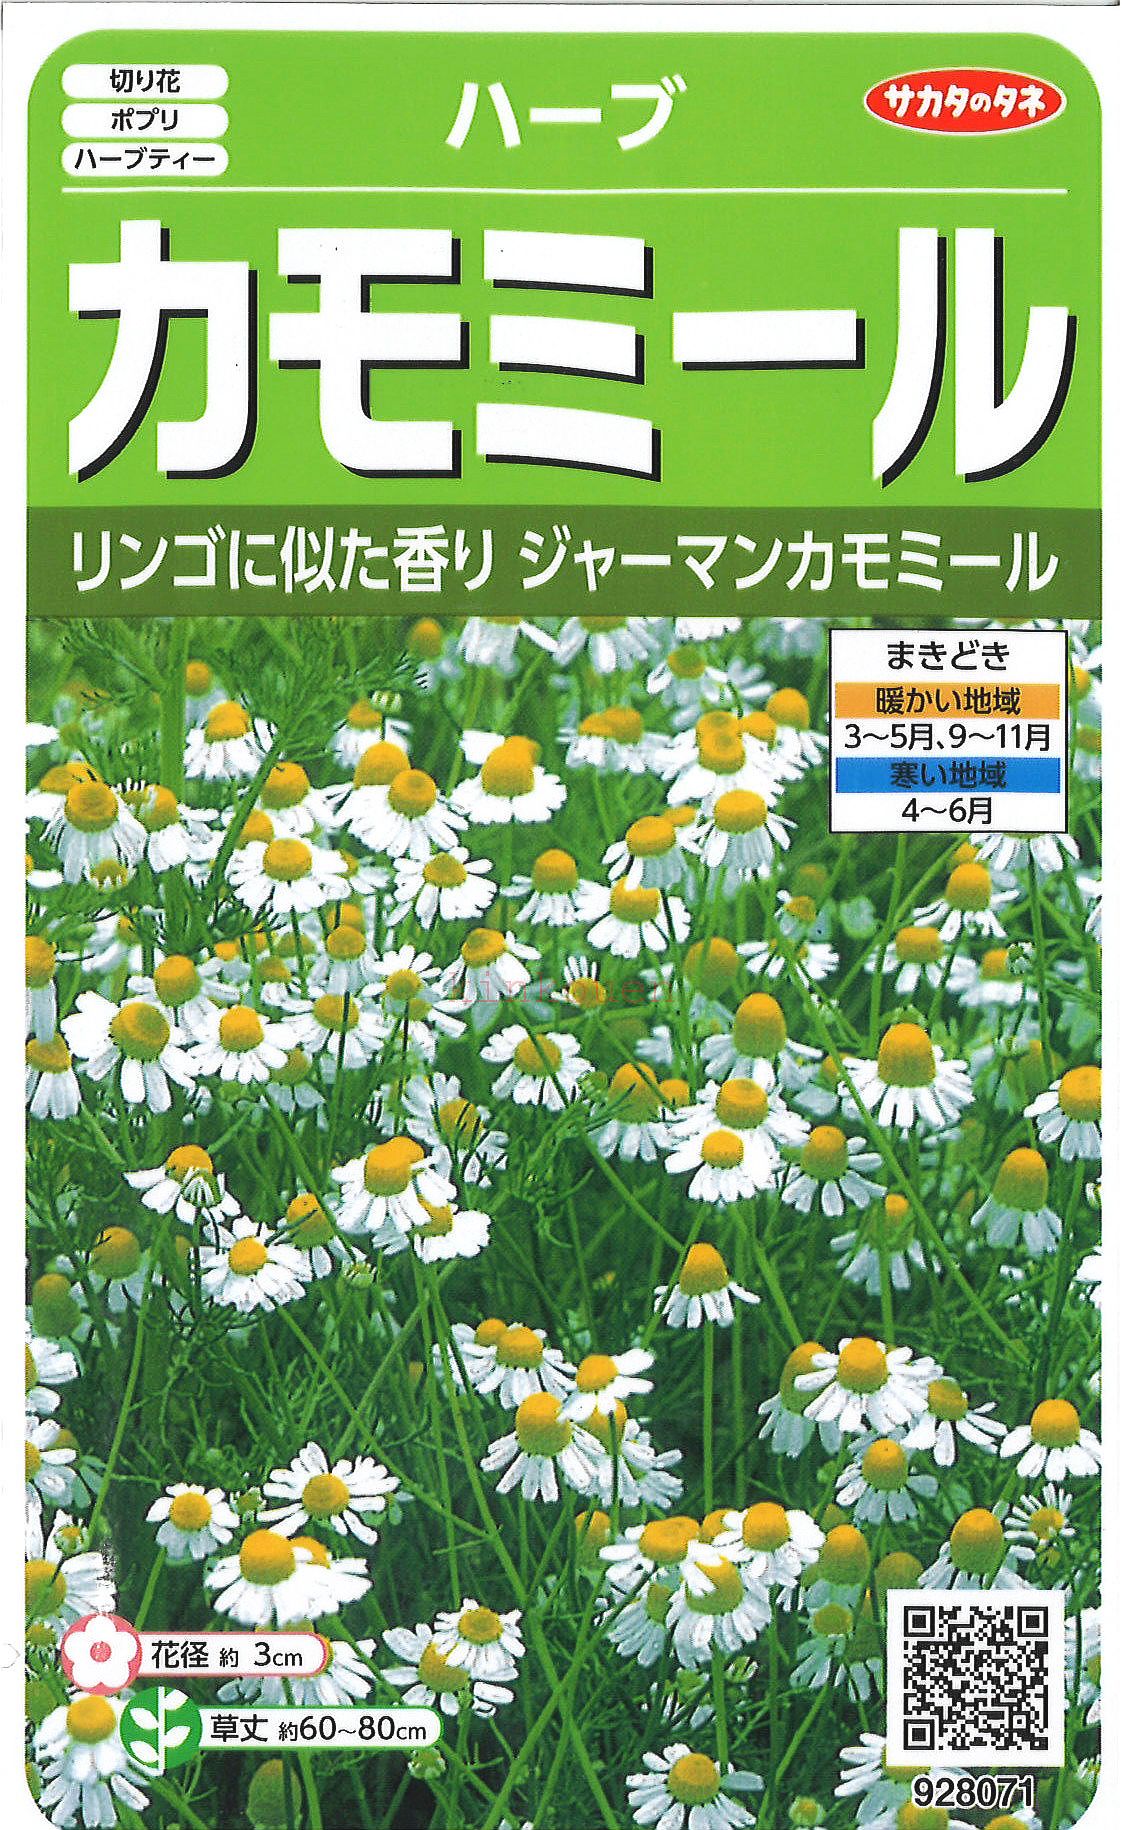 71%OFF!】 サカタのタネ 切り花用大実ほおずき ホオズキ 0.5ml